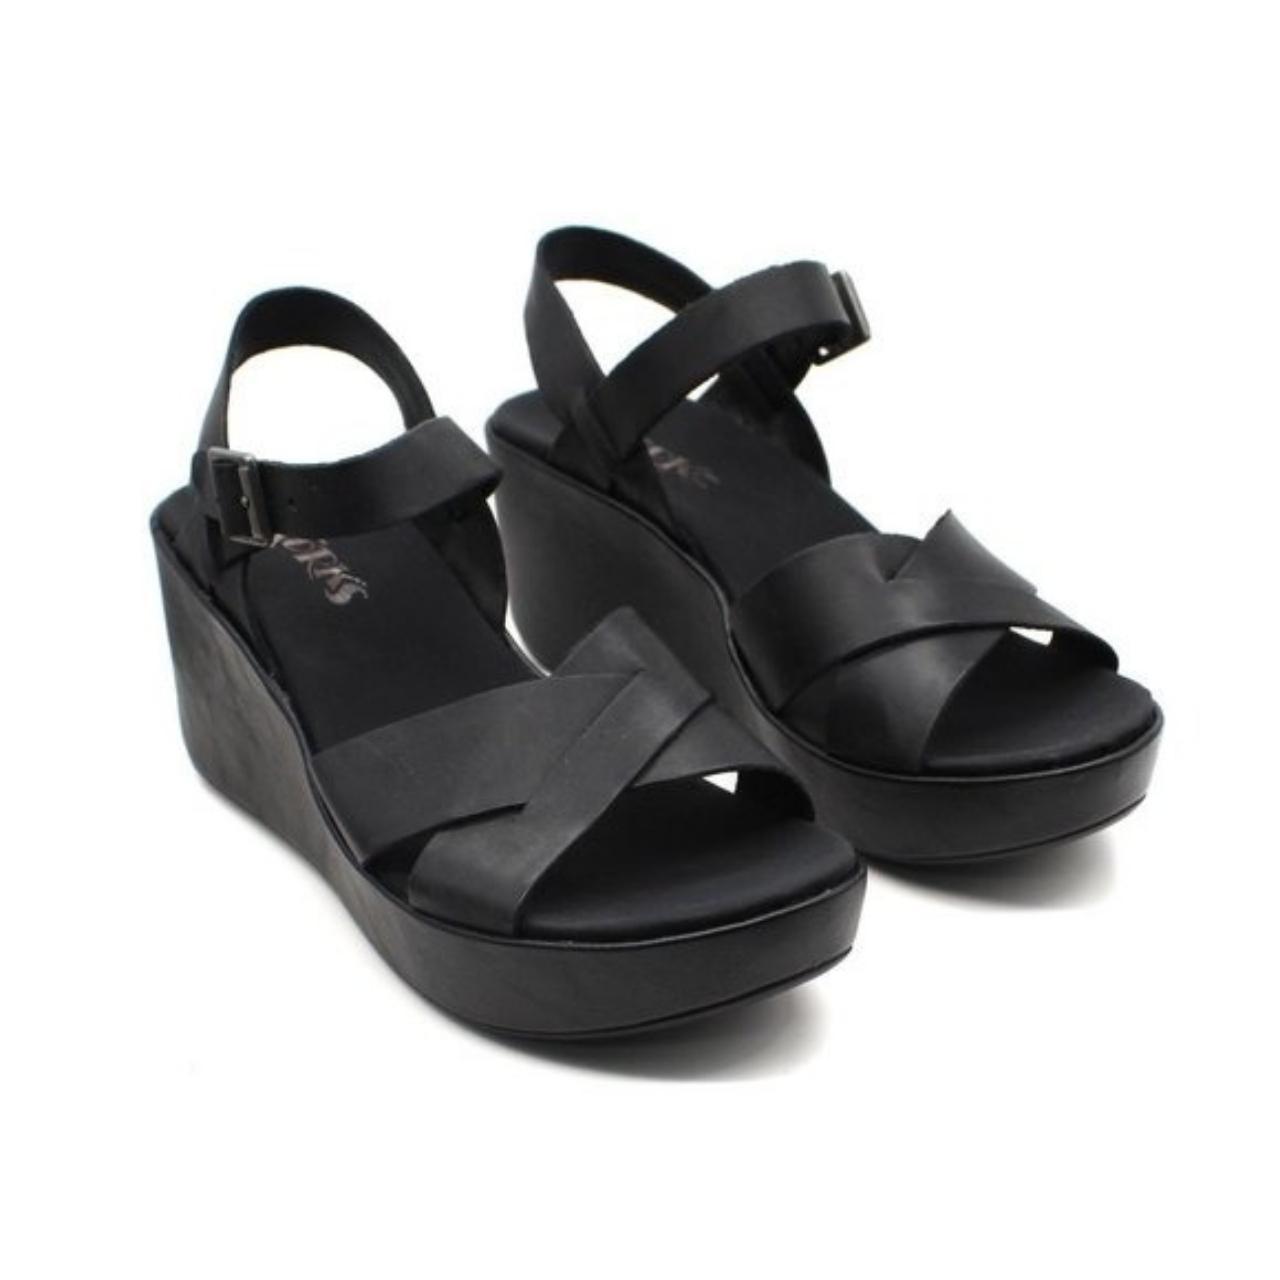 Product Image 1 - Korks Women's Denica Sandals Women's